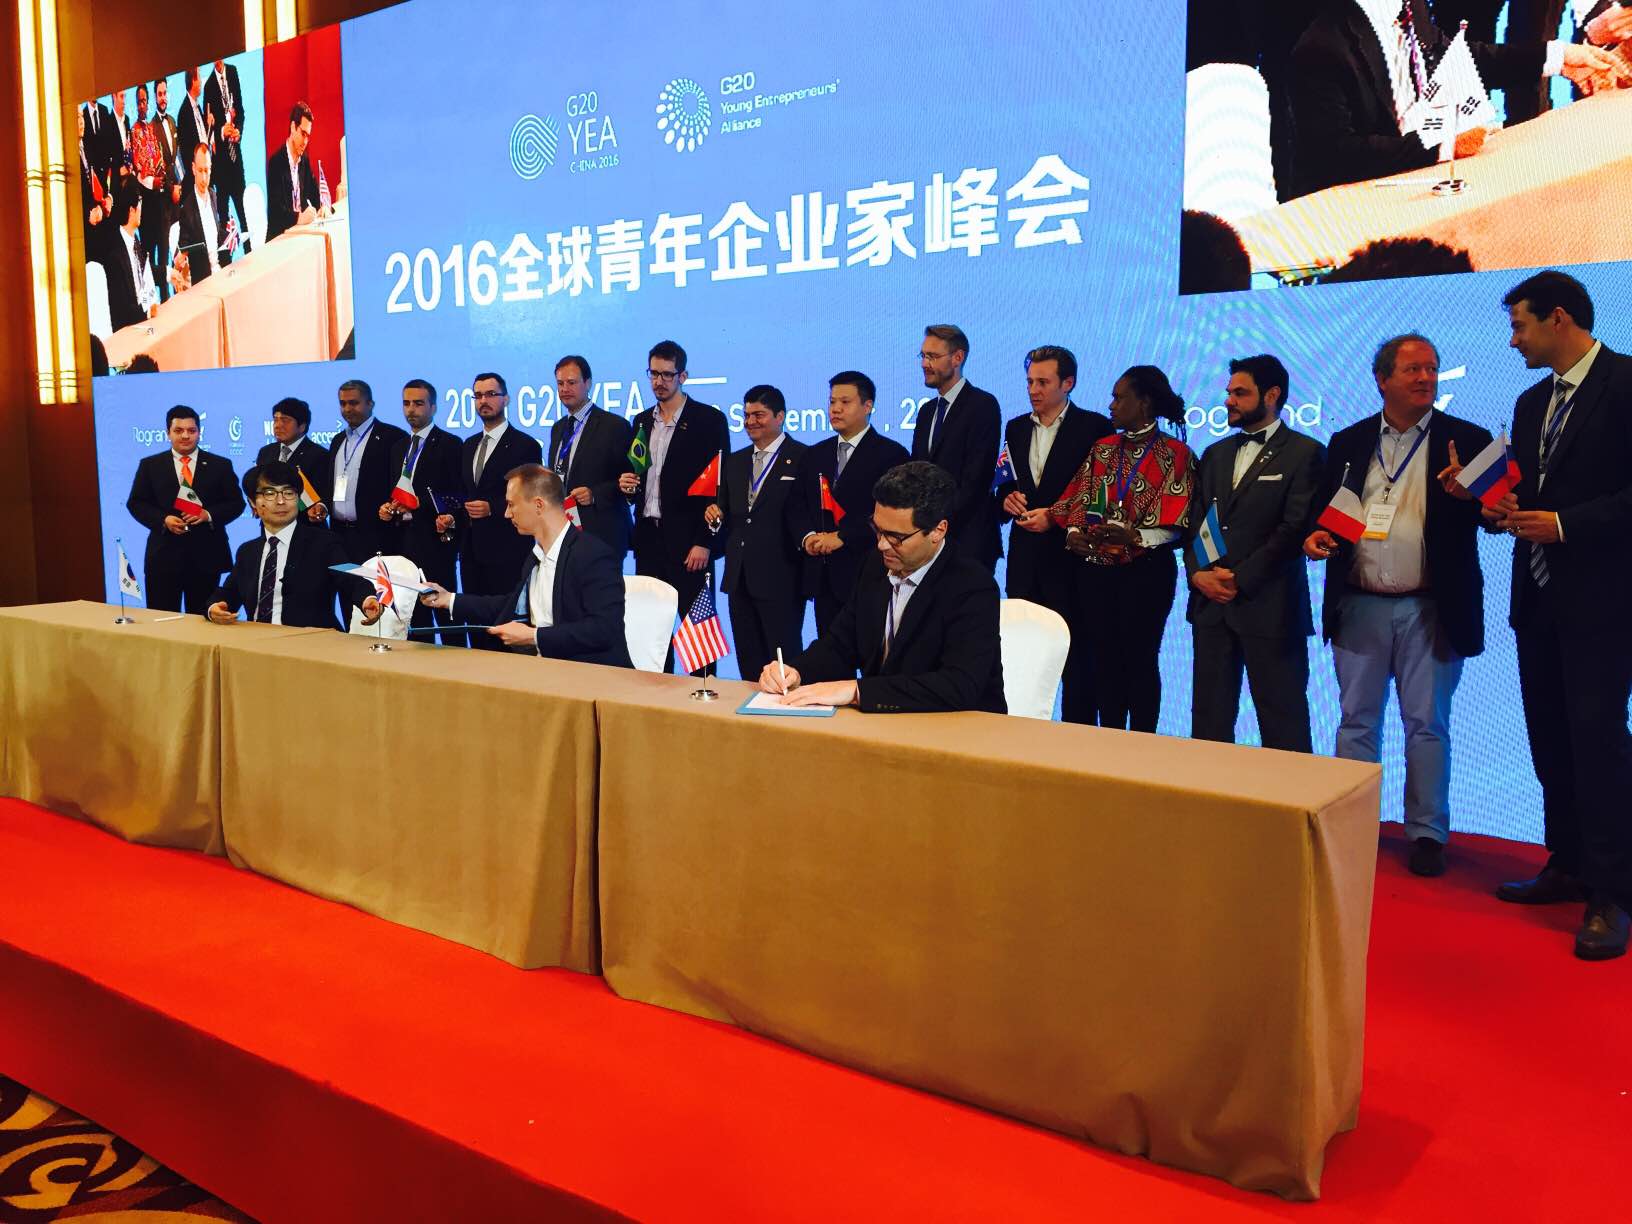 Les représentants des plateformes disruptives au G20 des entrepreneurs de Pekin